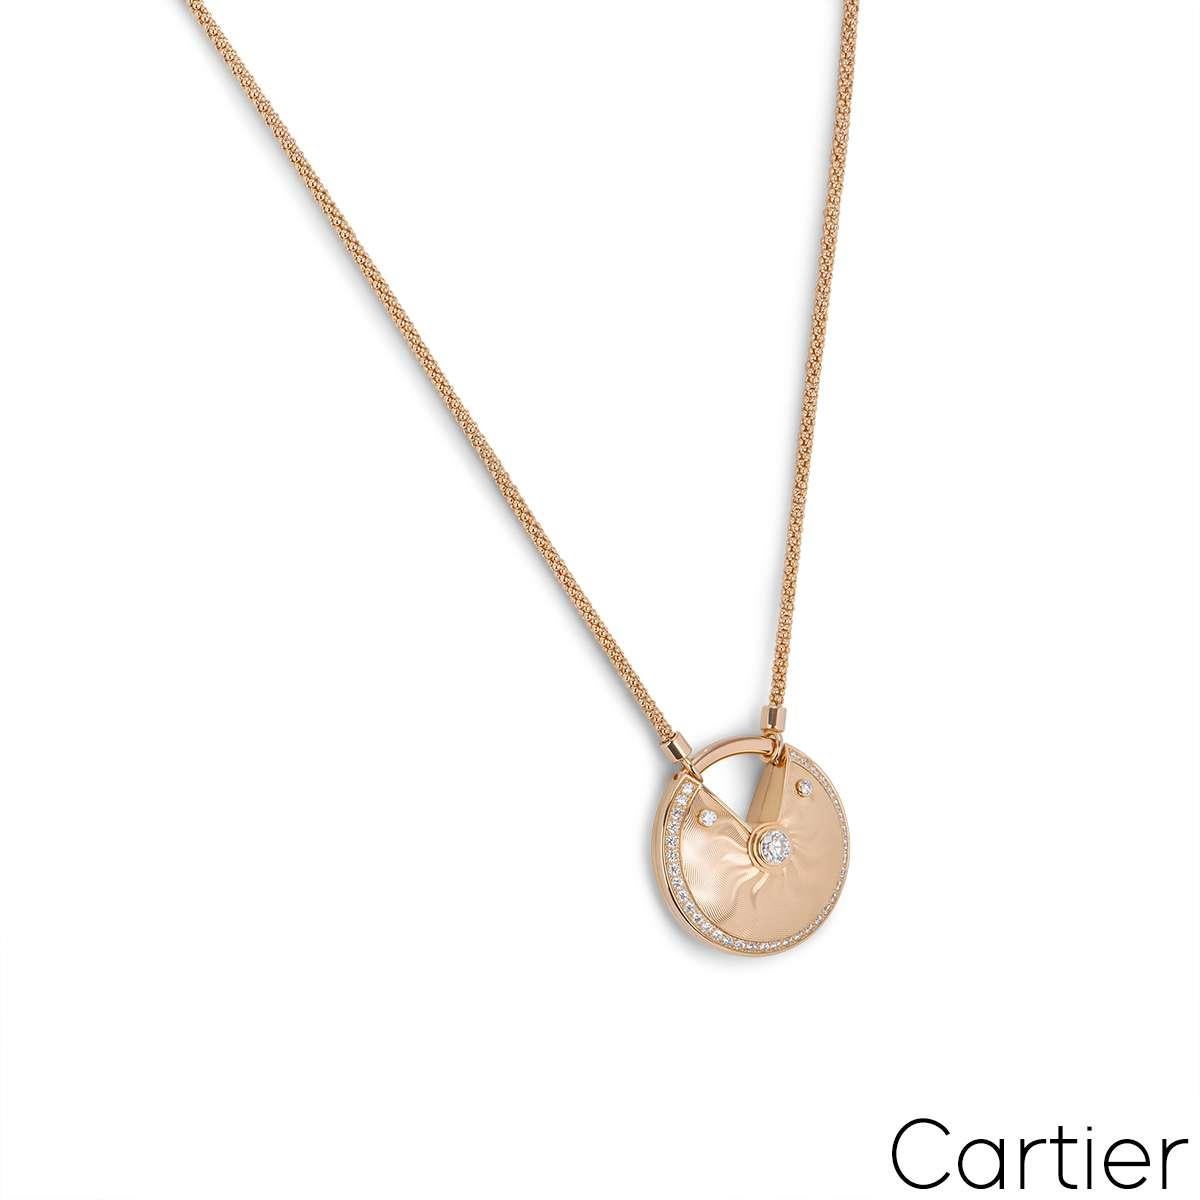 Magnifique collier de diamants en or rose 18 carats de Cartier, de la collection Amulette de Cartier. Le collier comporte un talisman circulaire présentant un motif guilloché et est serti au centre d'un diamant rond de taille brillant d'un poids